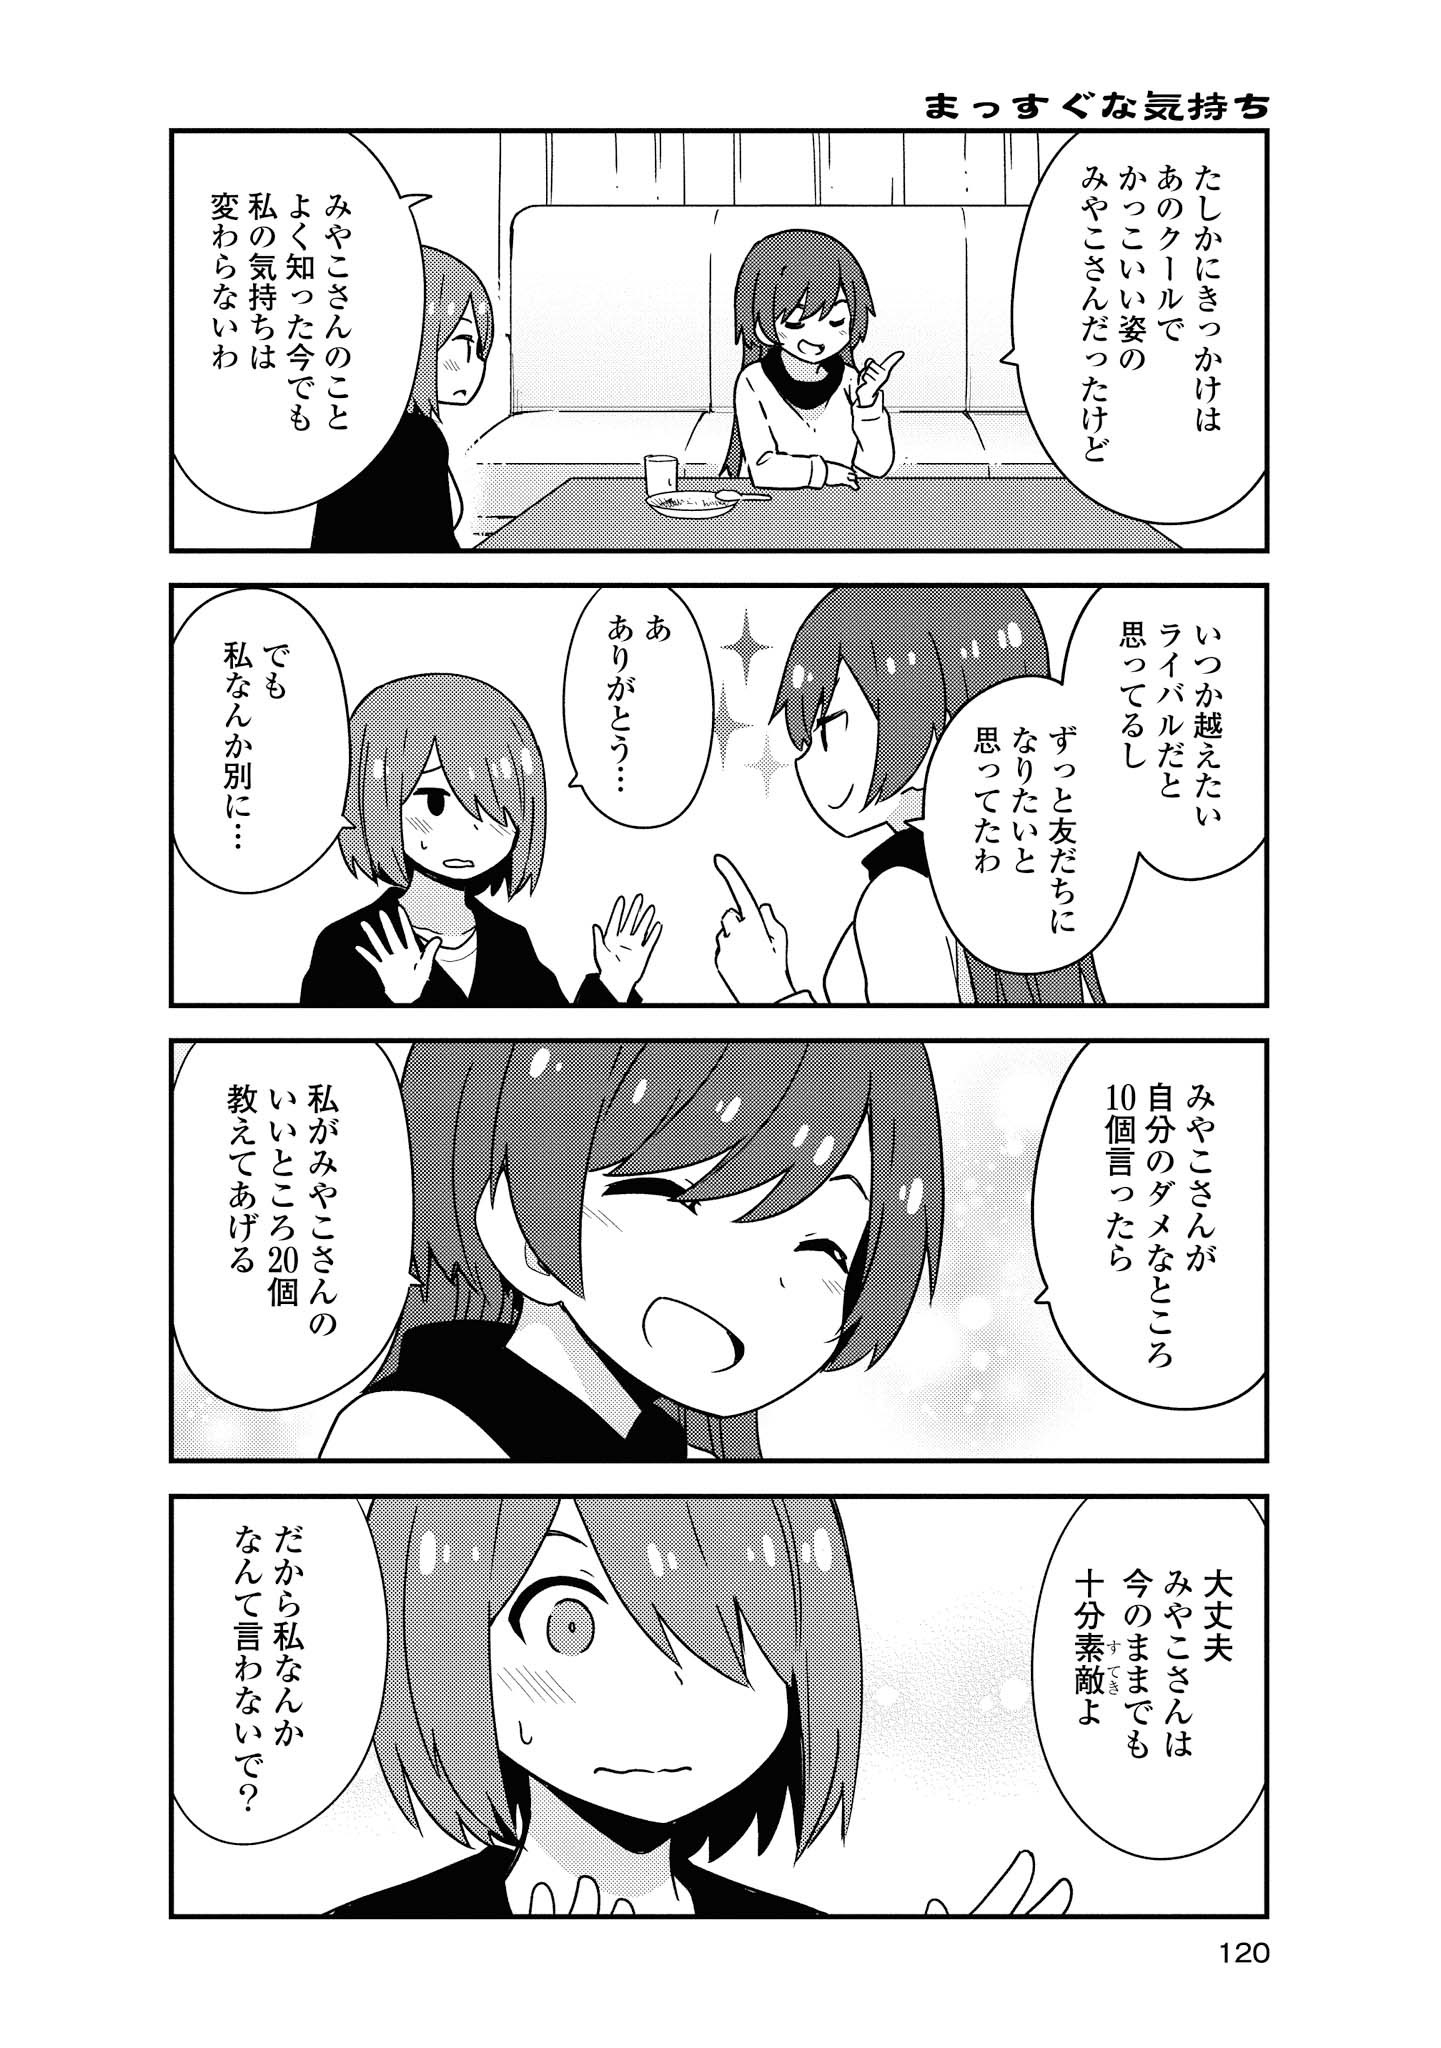 Watashi ni Tenshi ga Maiorita! - Chapter 50 - Page 14